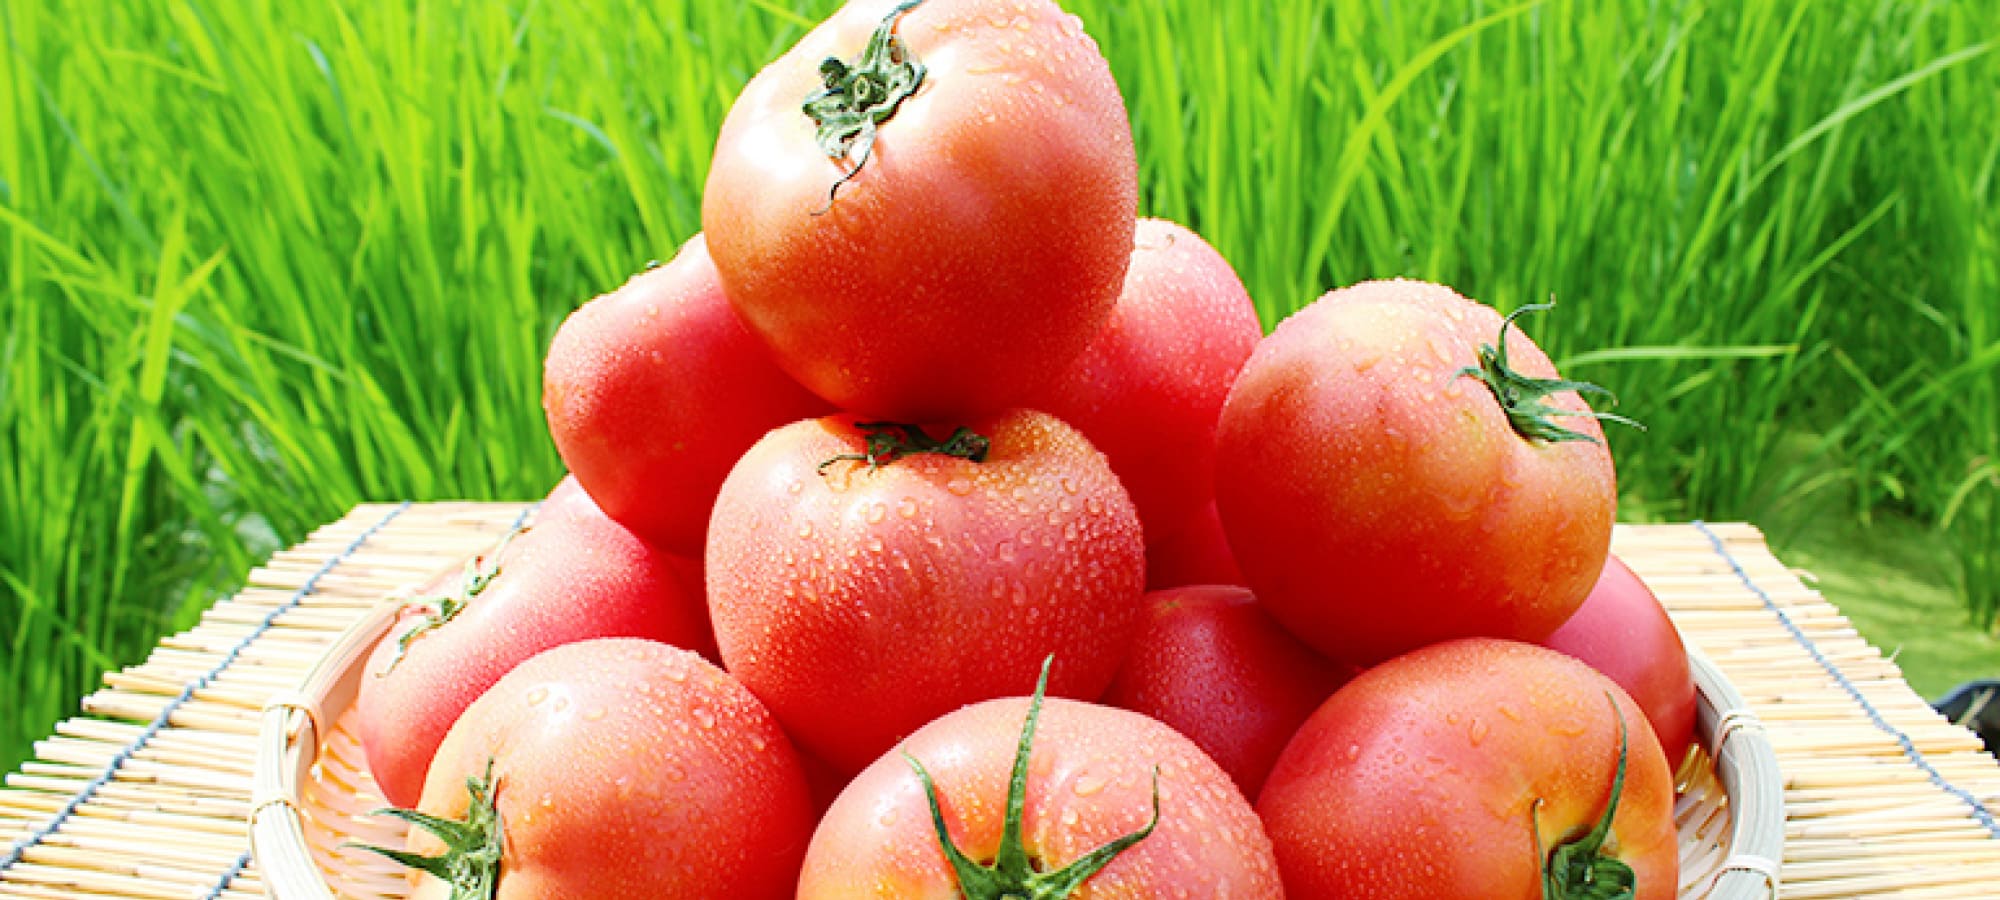 桃太郎トマトの写真